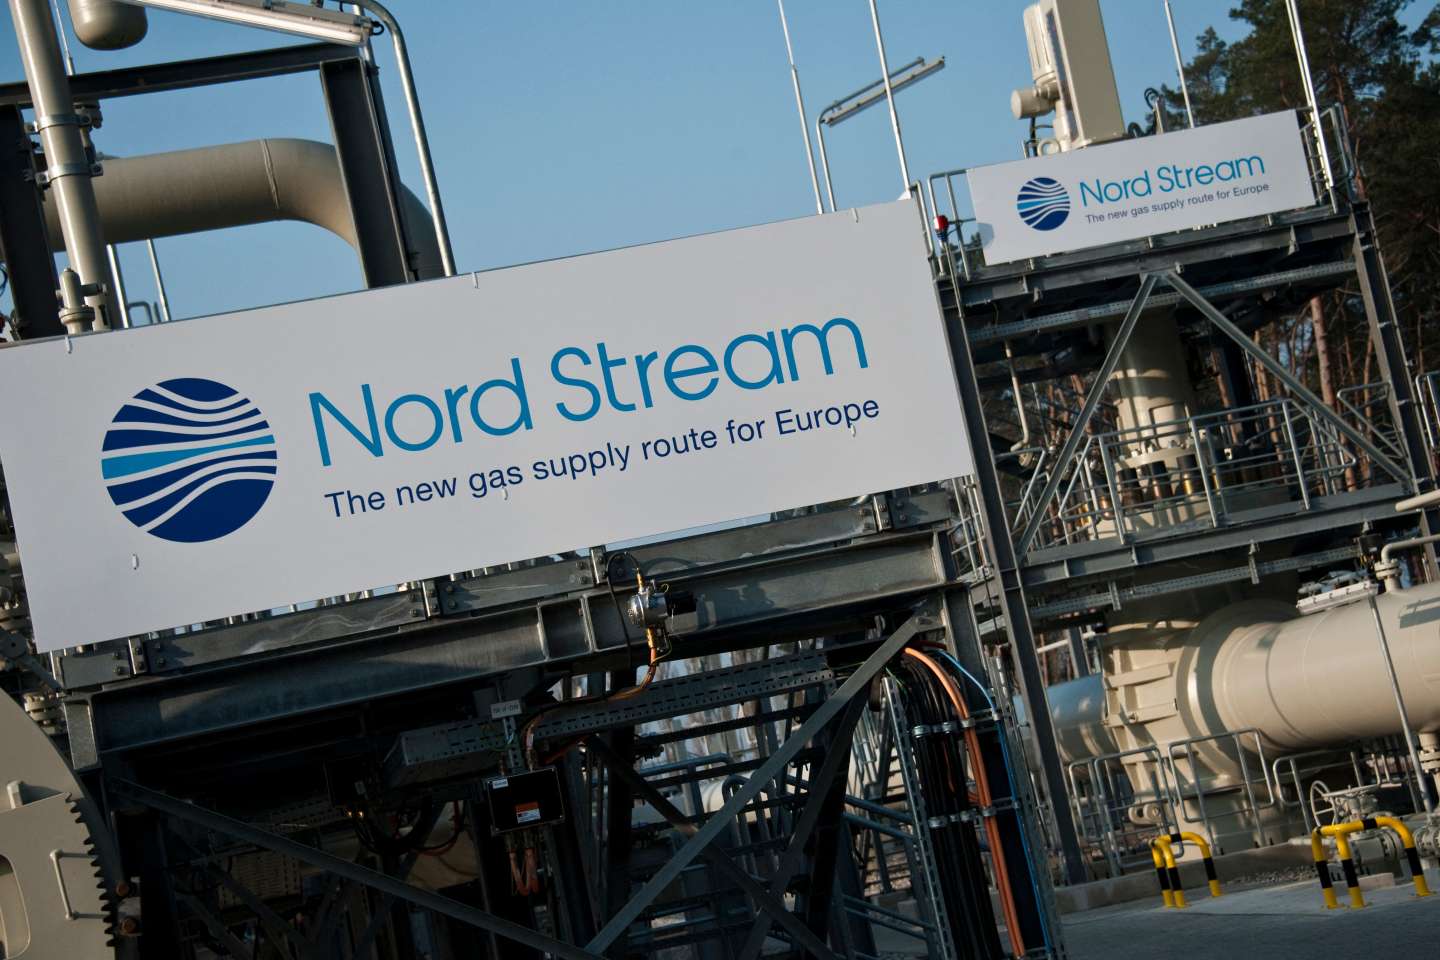 Les gazoducs Nord Stream touchés par des fuites inexpliquées, soupçons de sabotage